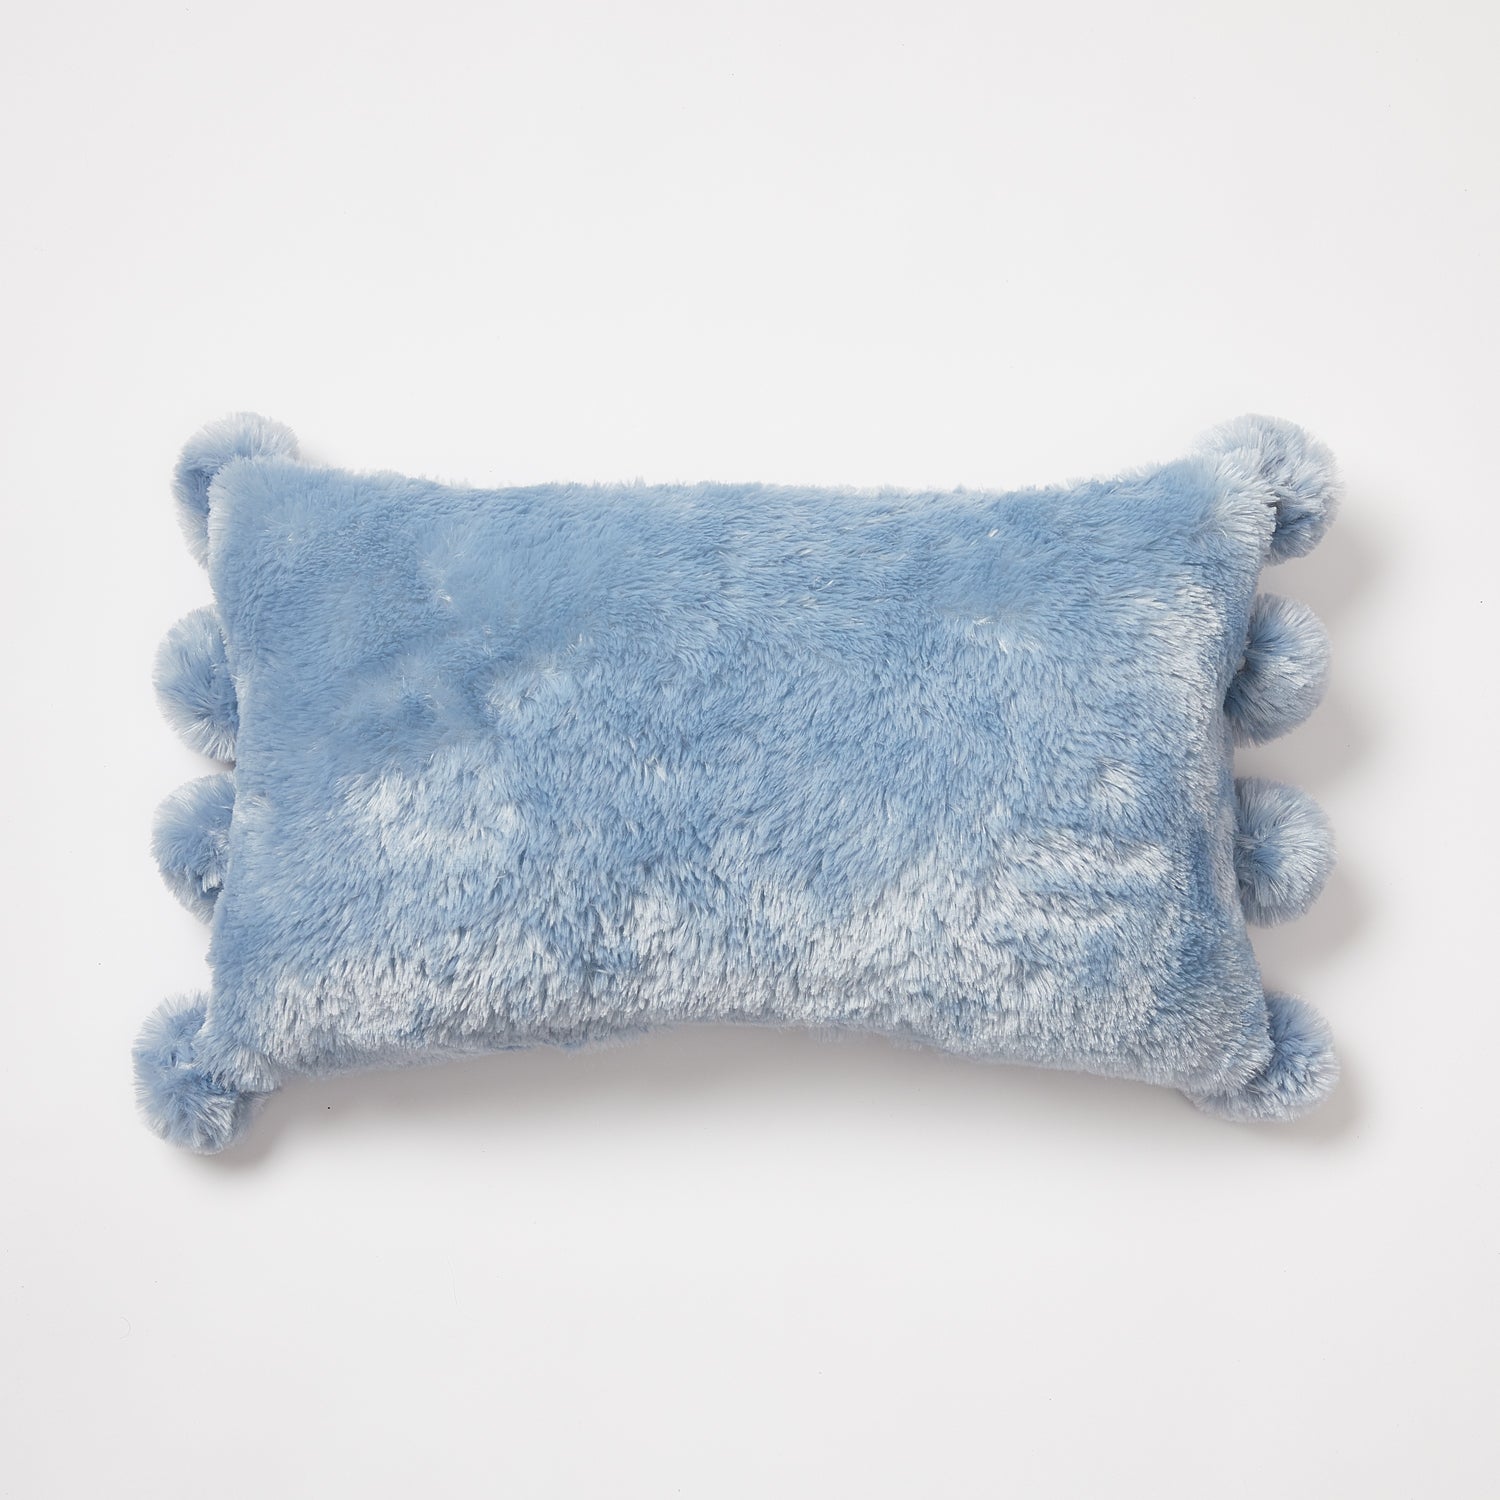 Super Soft Pom Pom Pillow - Light Blue | Bedding